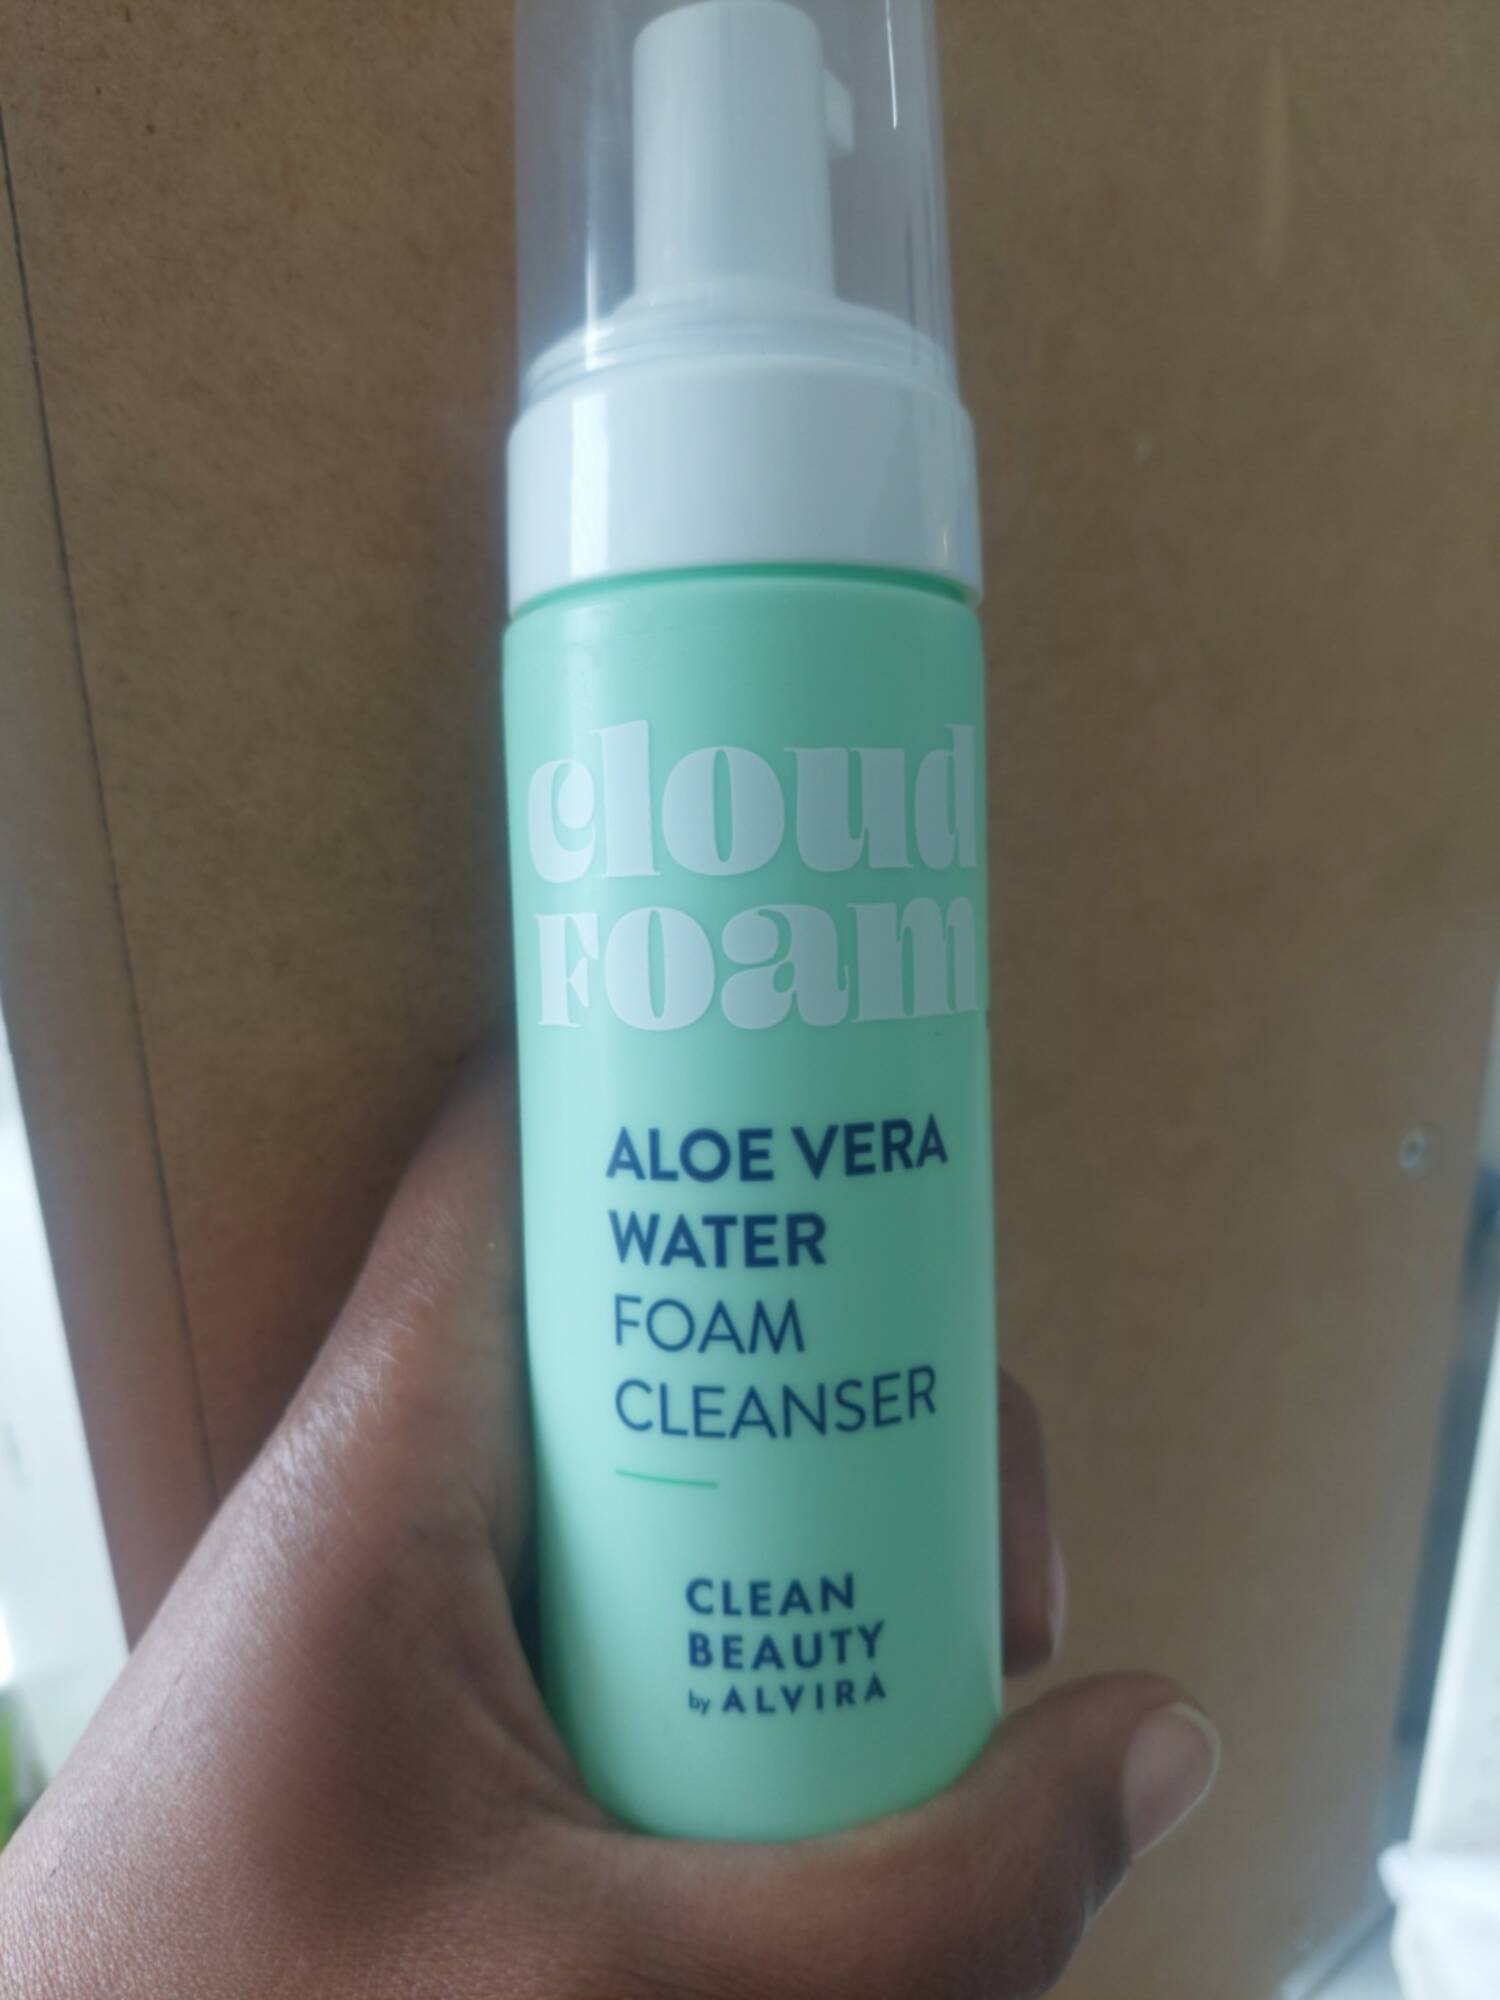 CLEAN BEAUTY BY ALVIRA - Cloud foam - Aloe vera water foam cleanser